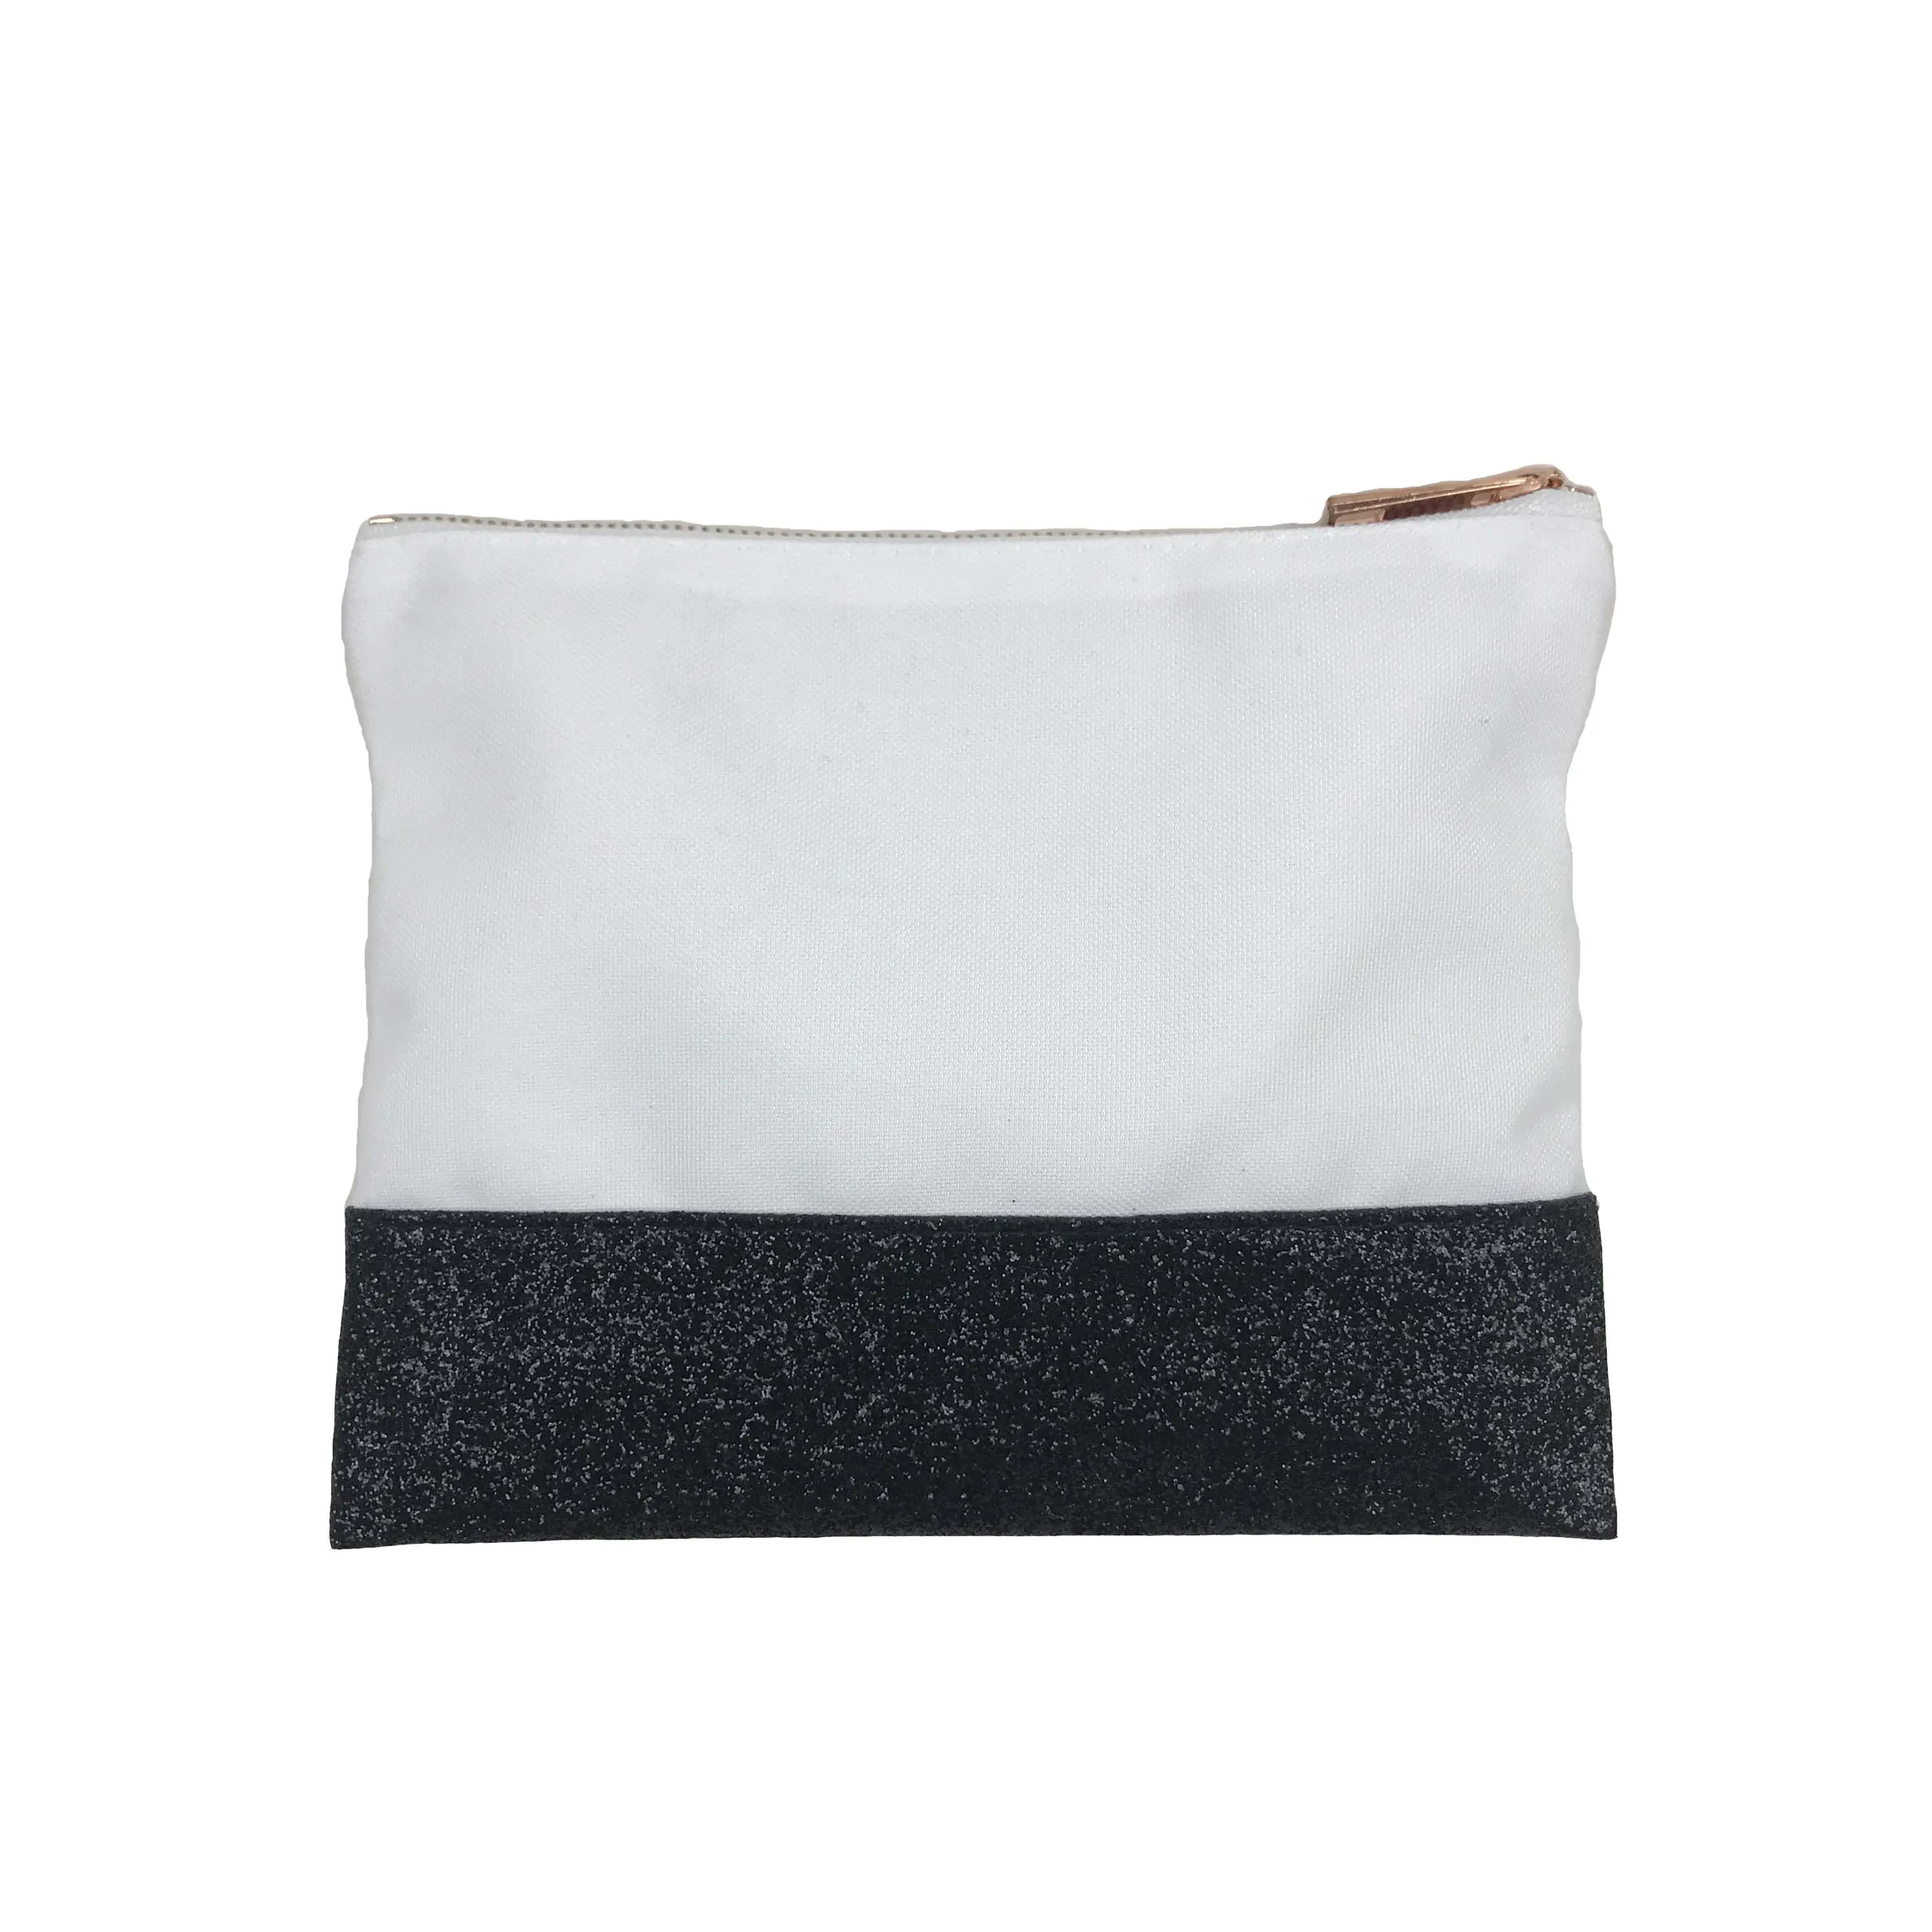 Túi Đựng Mỹ Phẩm Trang Điểm Mini Vải Bố Polyester Giá Rẻ Tùy Chỉnh Có Khóa Kéo Màu Vàng Hồng Kim Loại